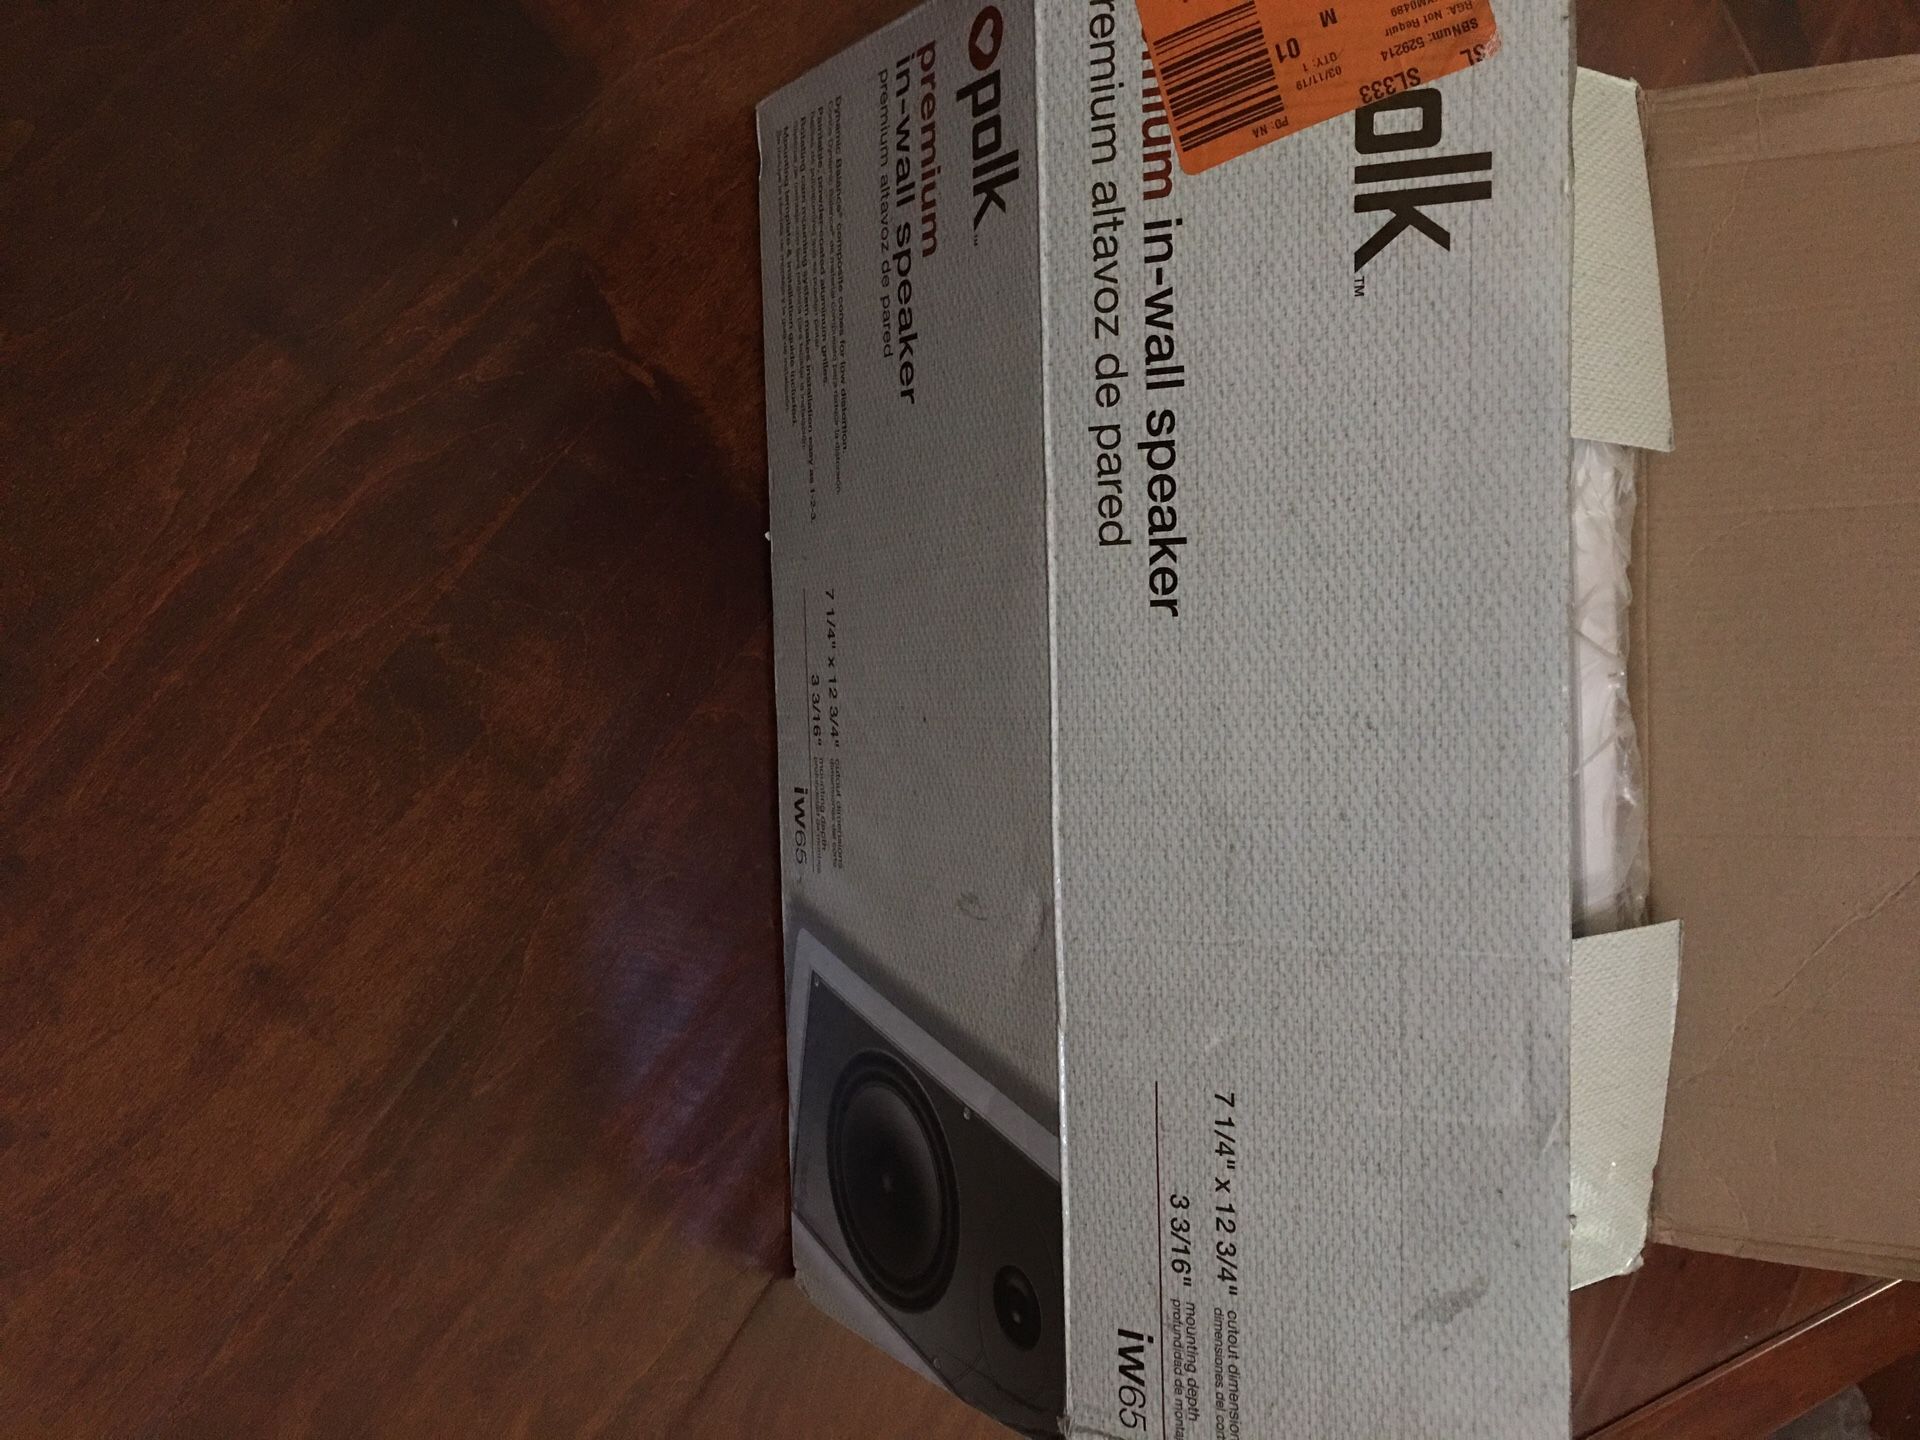 NEW ! POLK AUDIO iW65 IN-WALL SPEAKER box wears